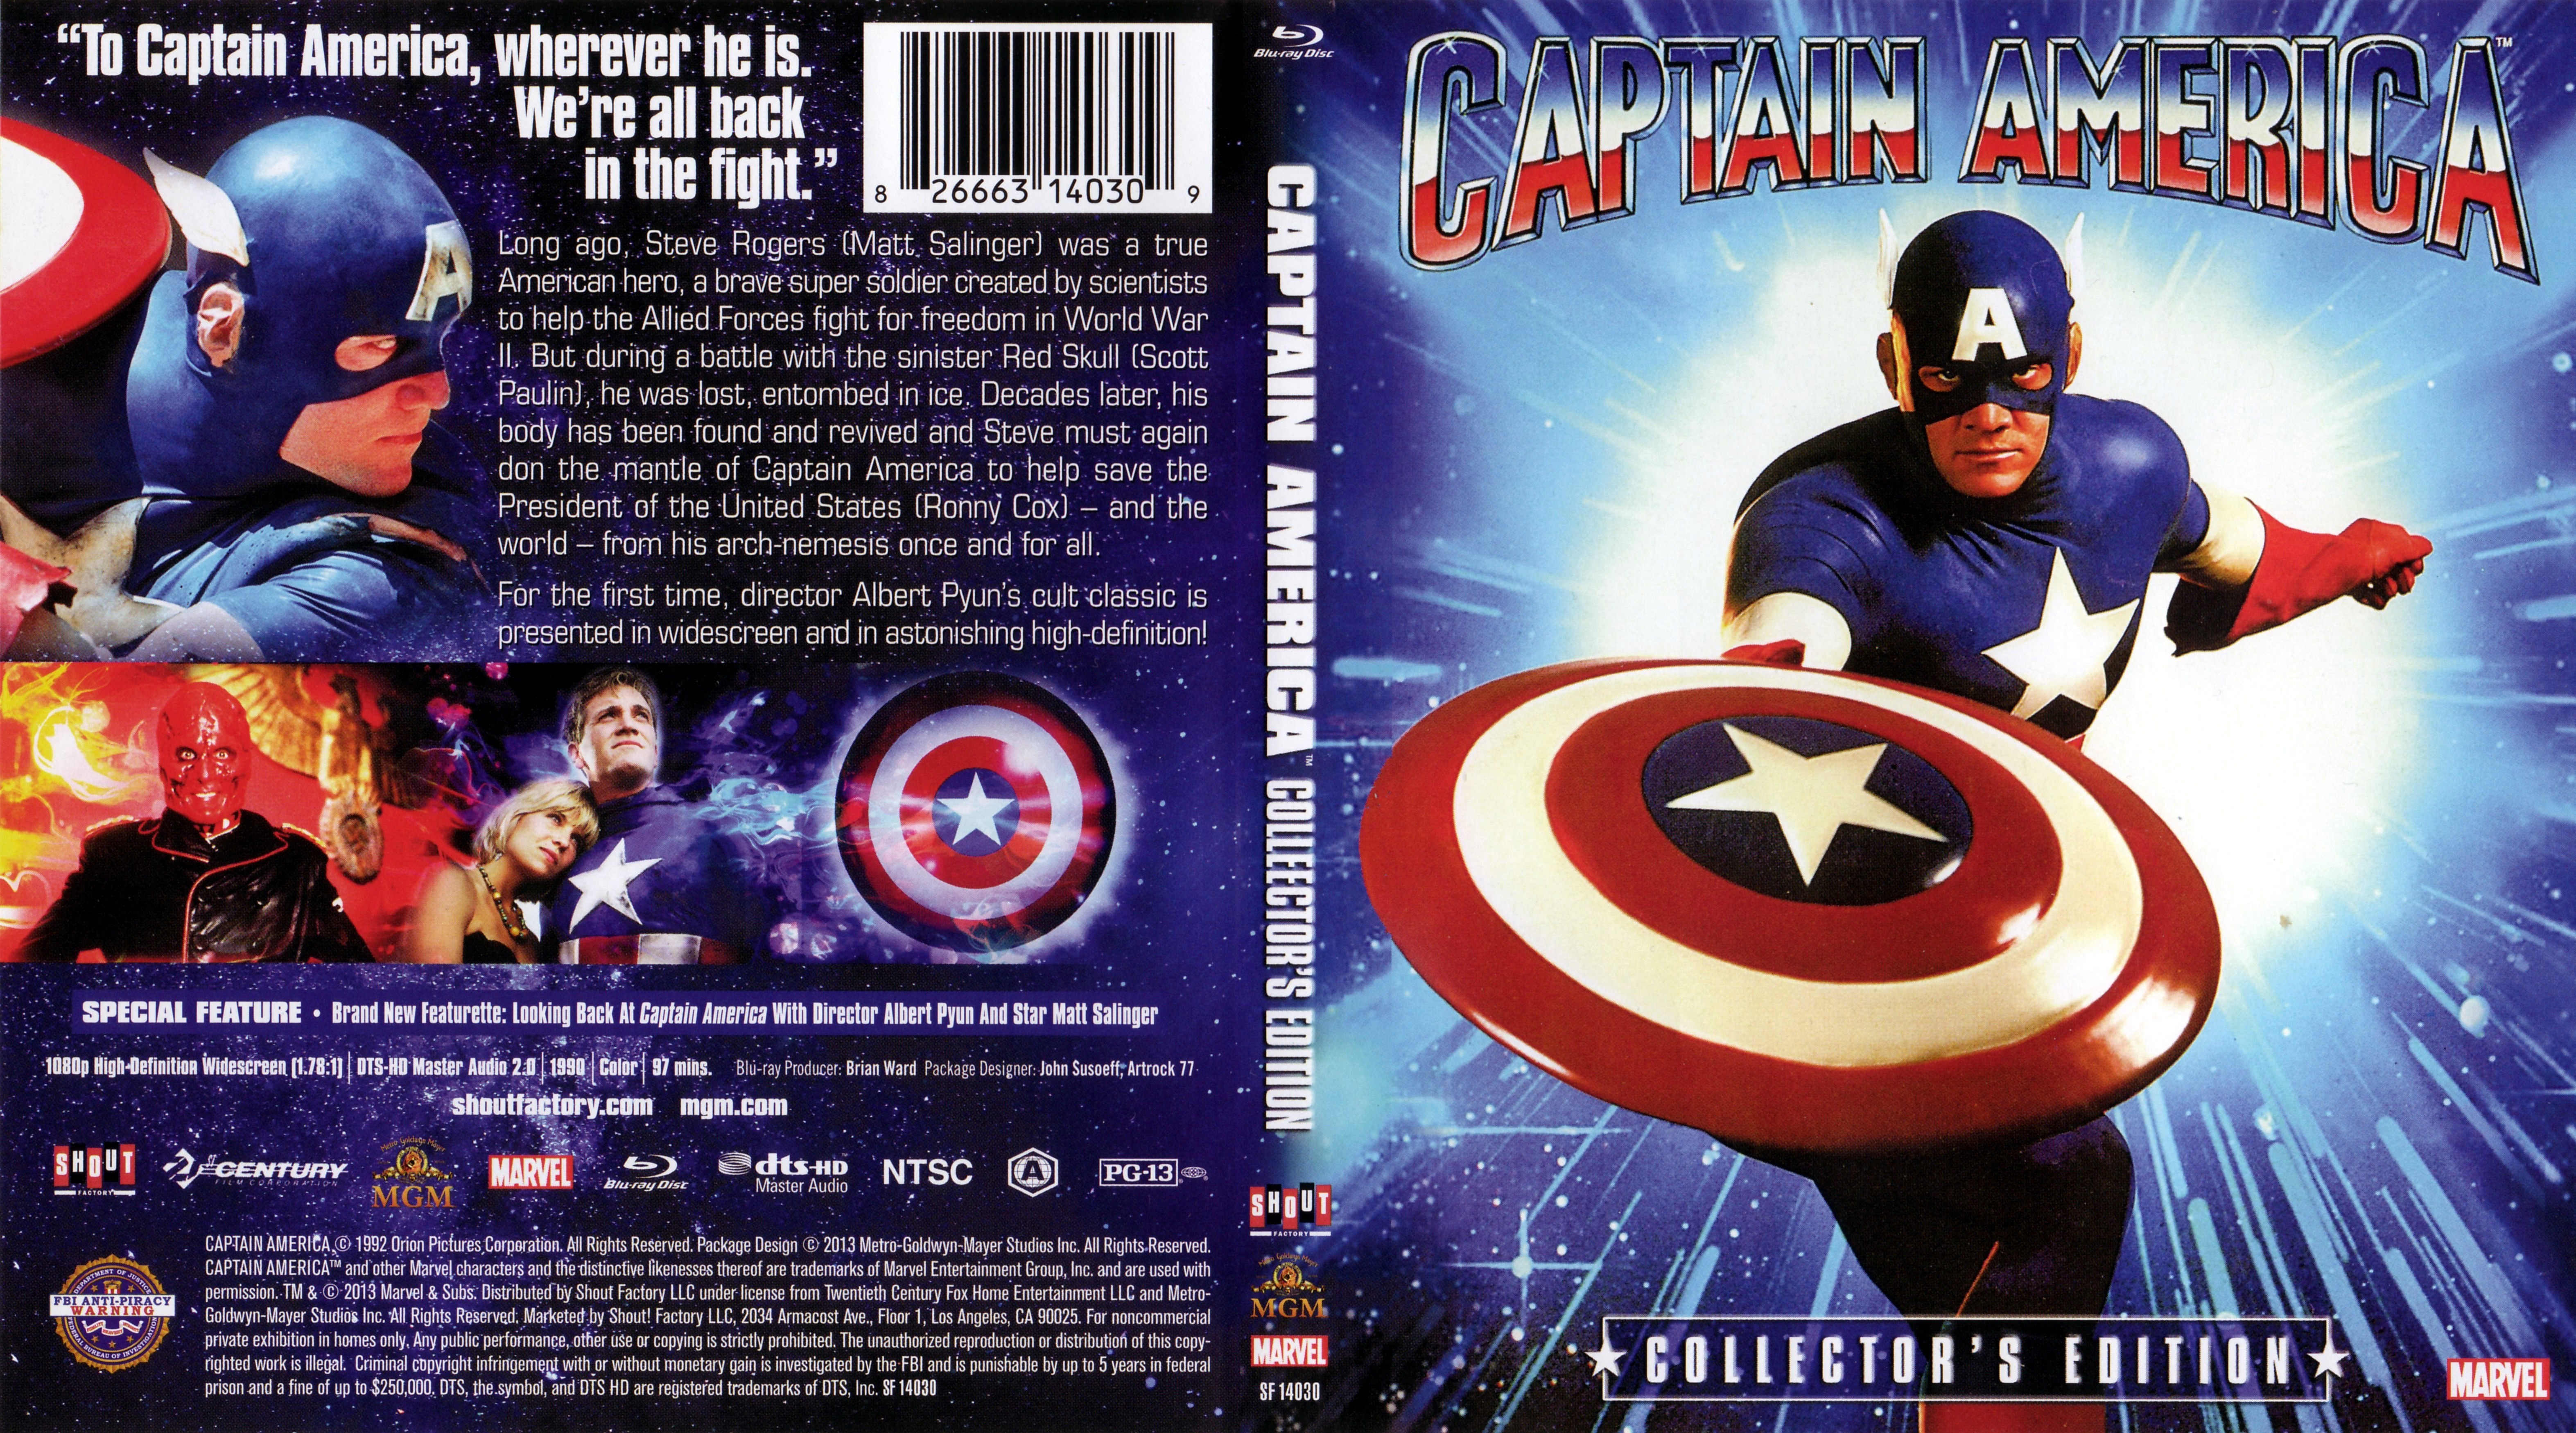 Jaquette DVD Captain America (1990) Zone 1 (BLU-RAY)